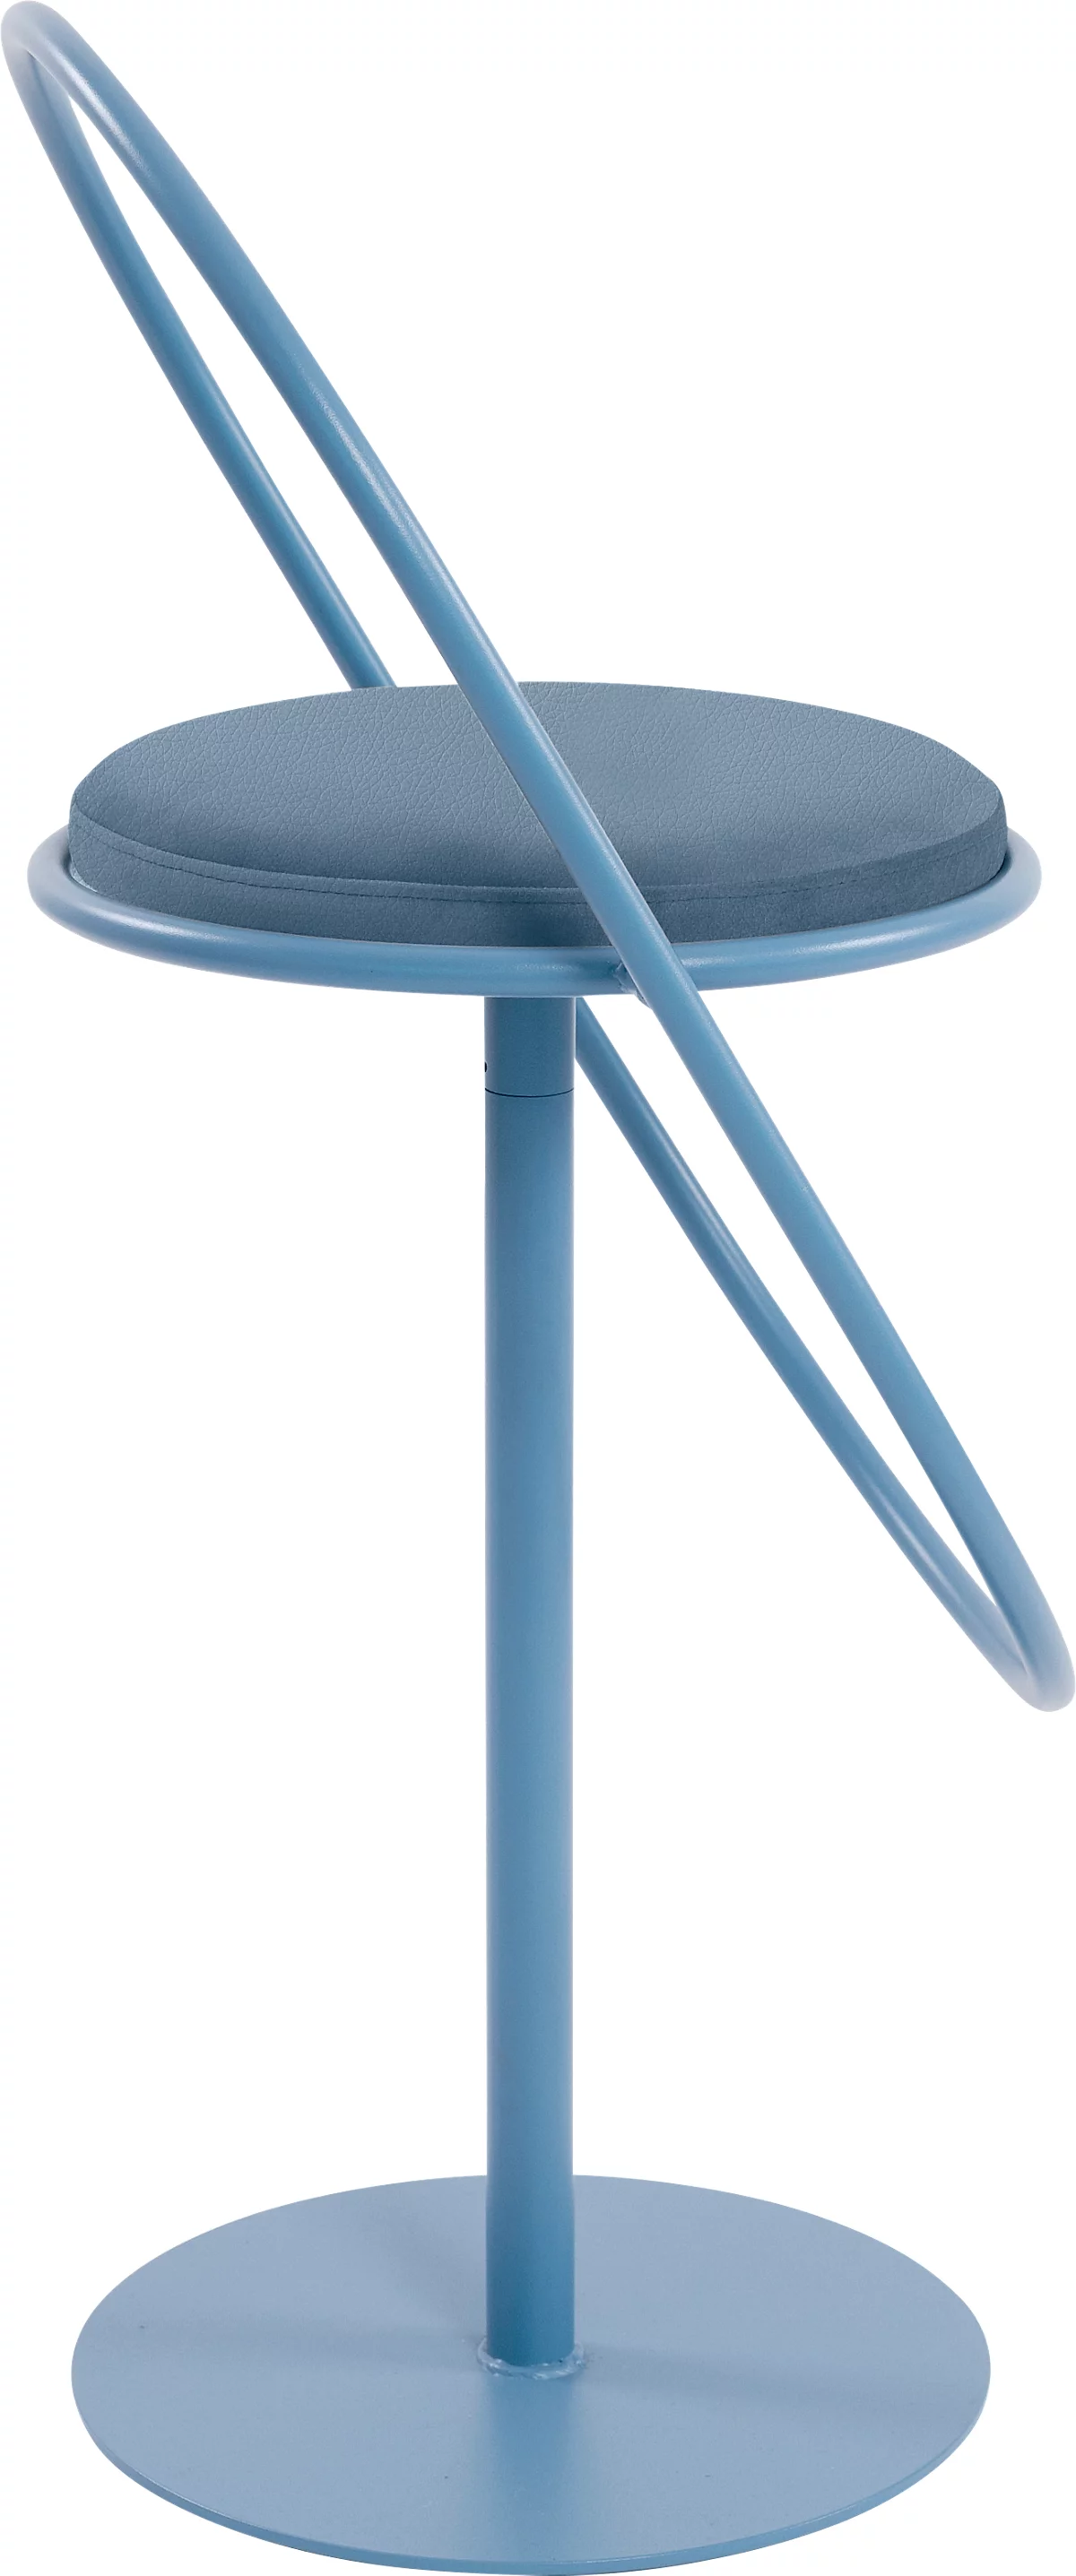 Barhocker Paperflow Saturne, mit Rückenlehne, Sitzhöhe 765 mm, gepolstert, zu 100 % recycelbar, Kunstlederbezug blau, Gestell blau